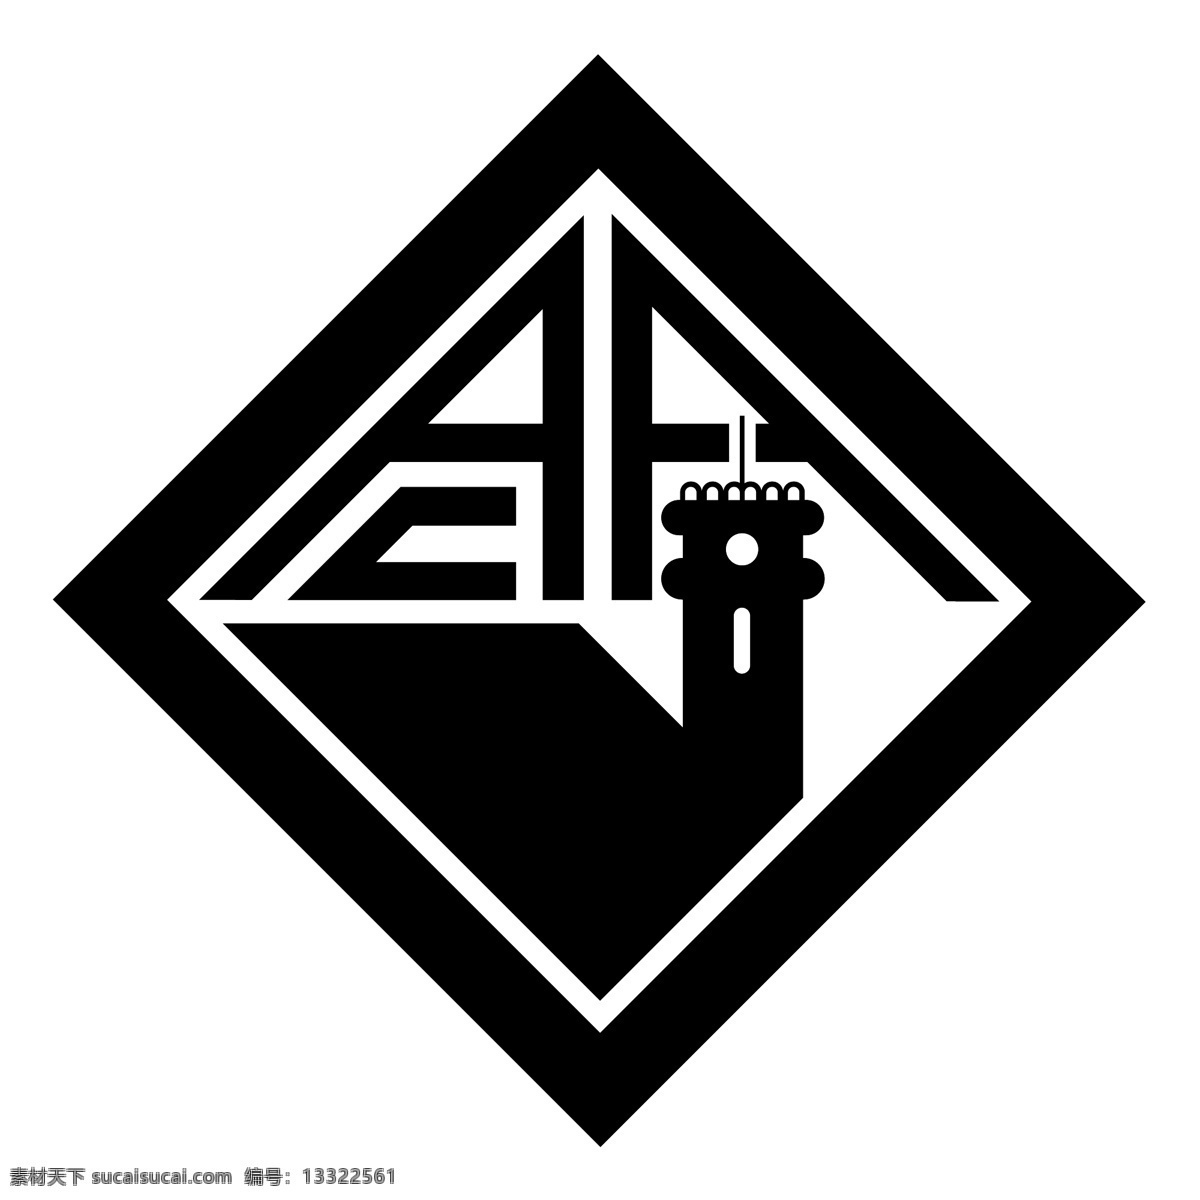 科英布拉 大学 自由 标志 标识 psd源文件 logo设计